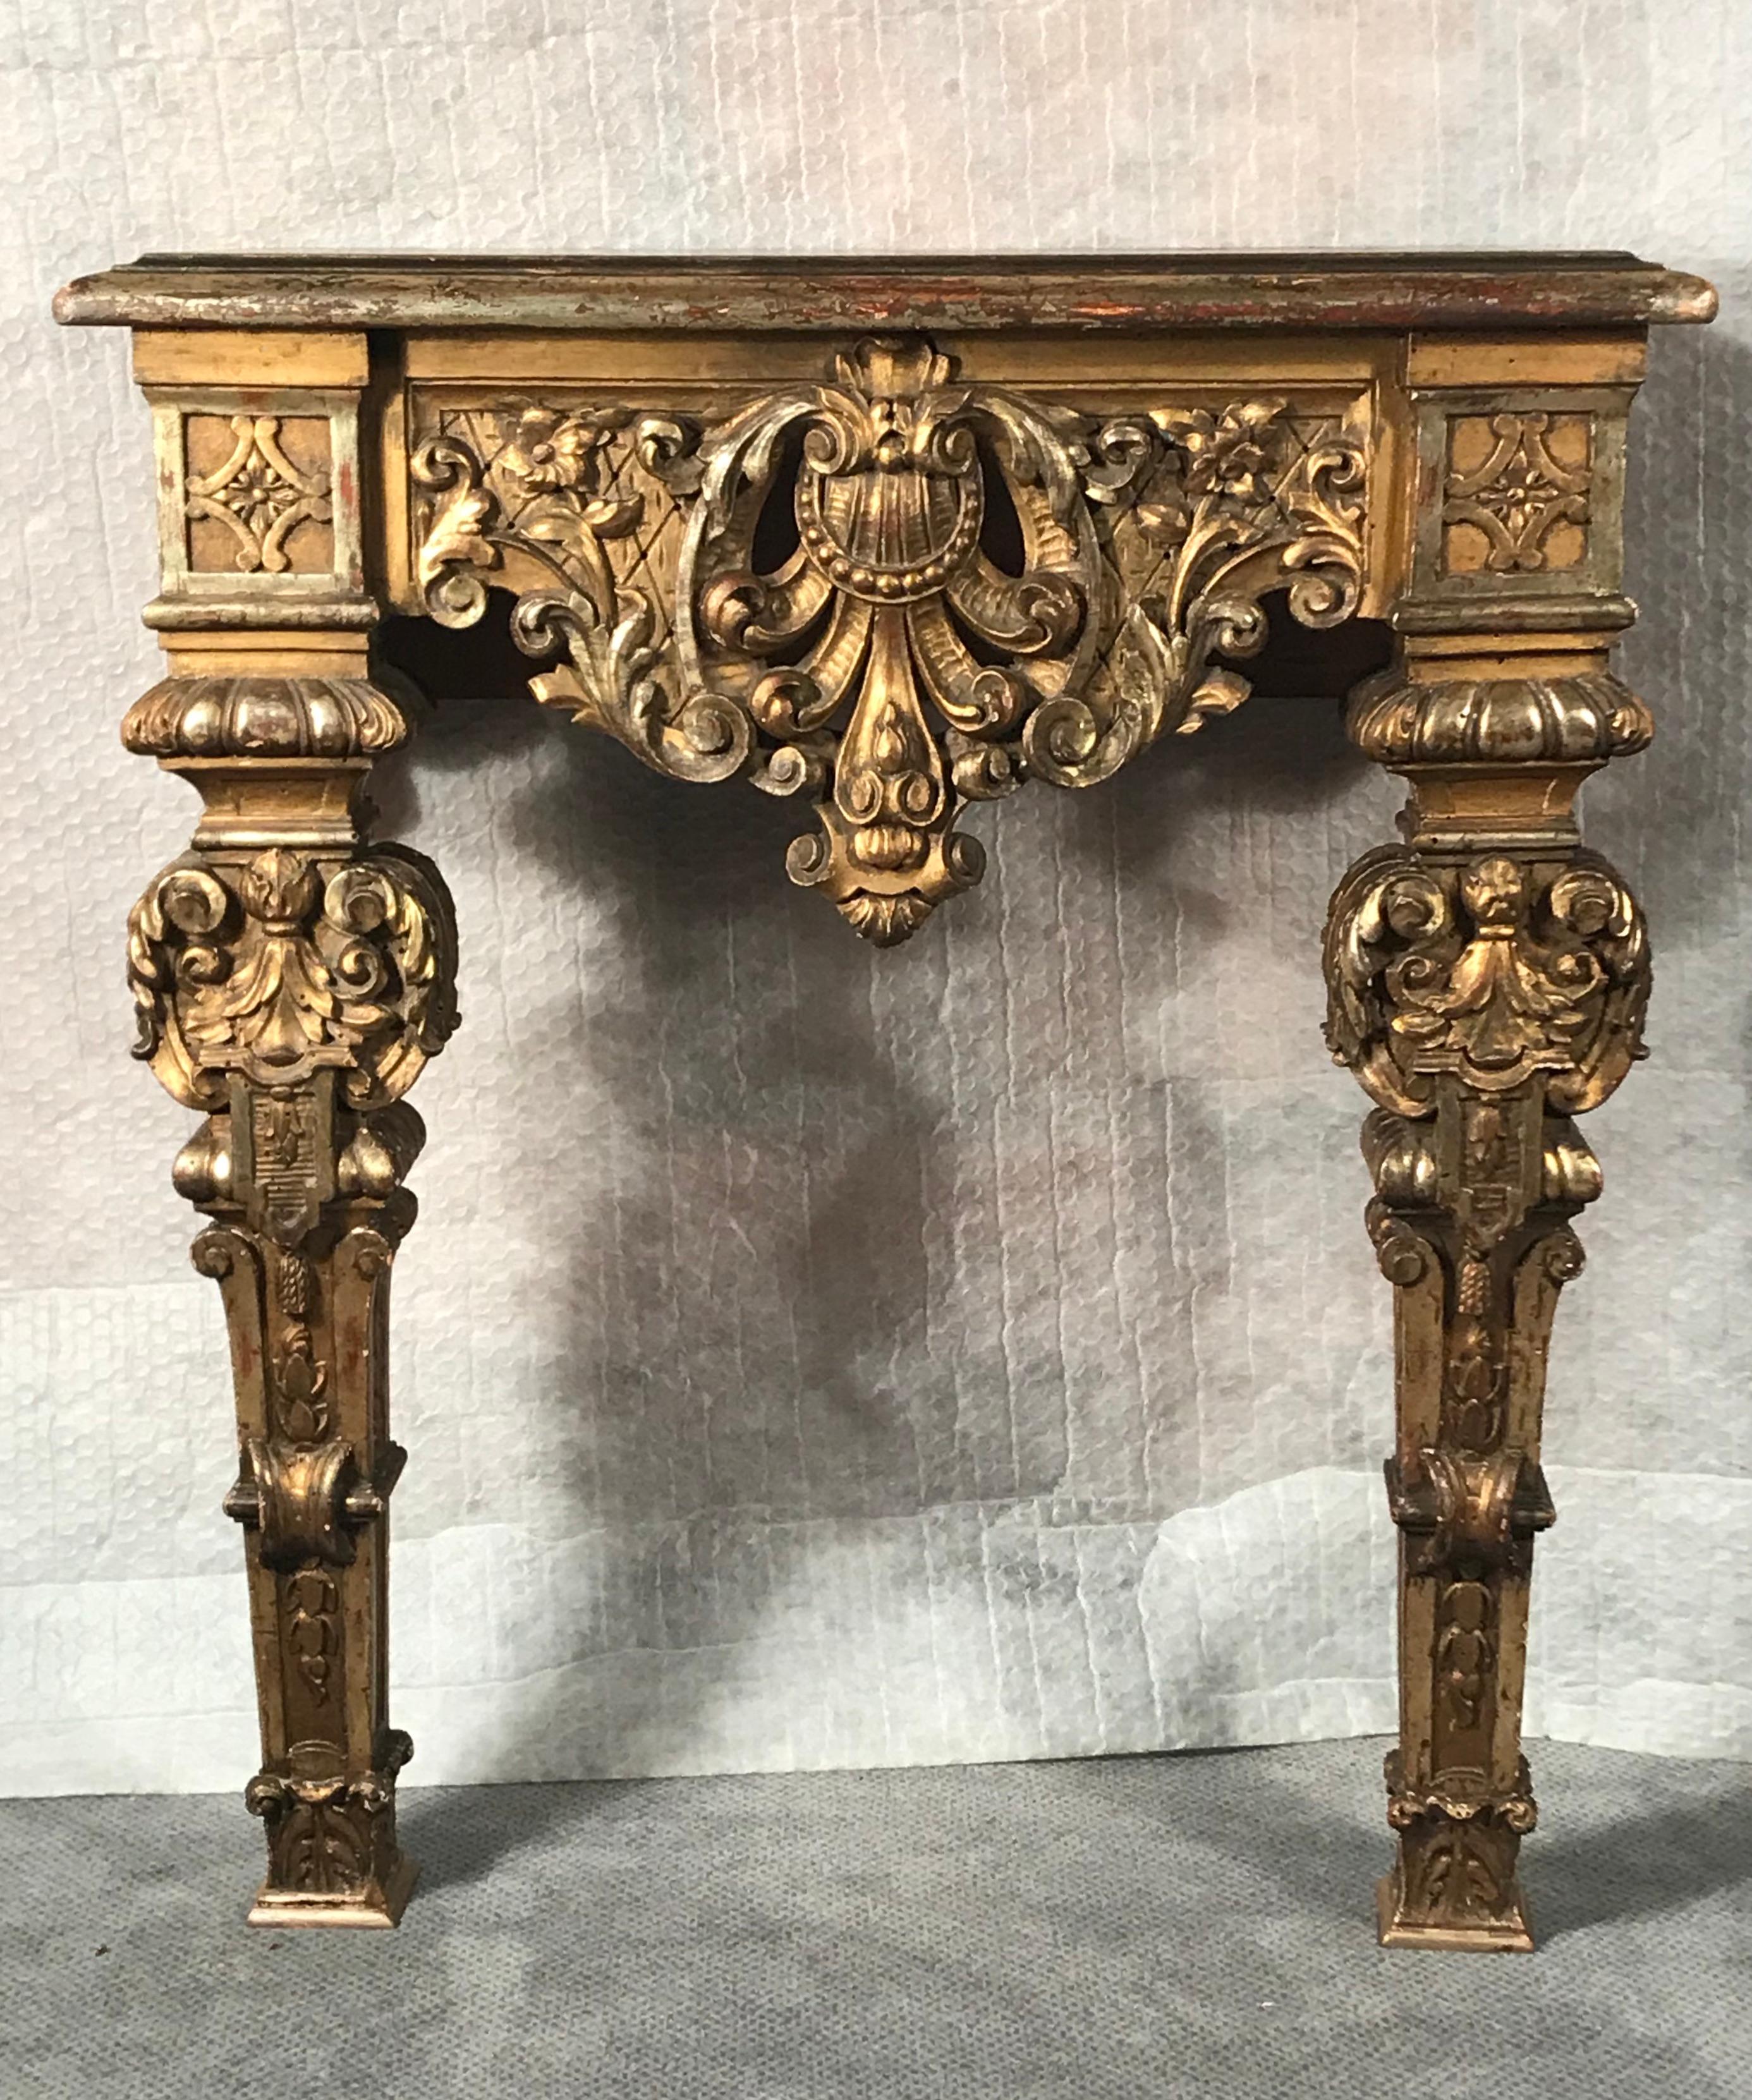 Cette console baroque originale du XVIIIe siècle se distingue par ses détails en bois doré finement sculptés. C'est le parfait petit accroche-regard pour une entrée plus petite. Si vous recherchez un mélange éclectique d'ancien et de nouveau, vous